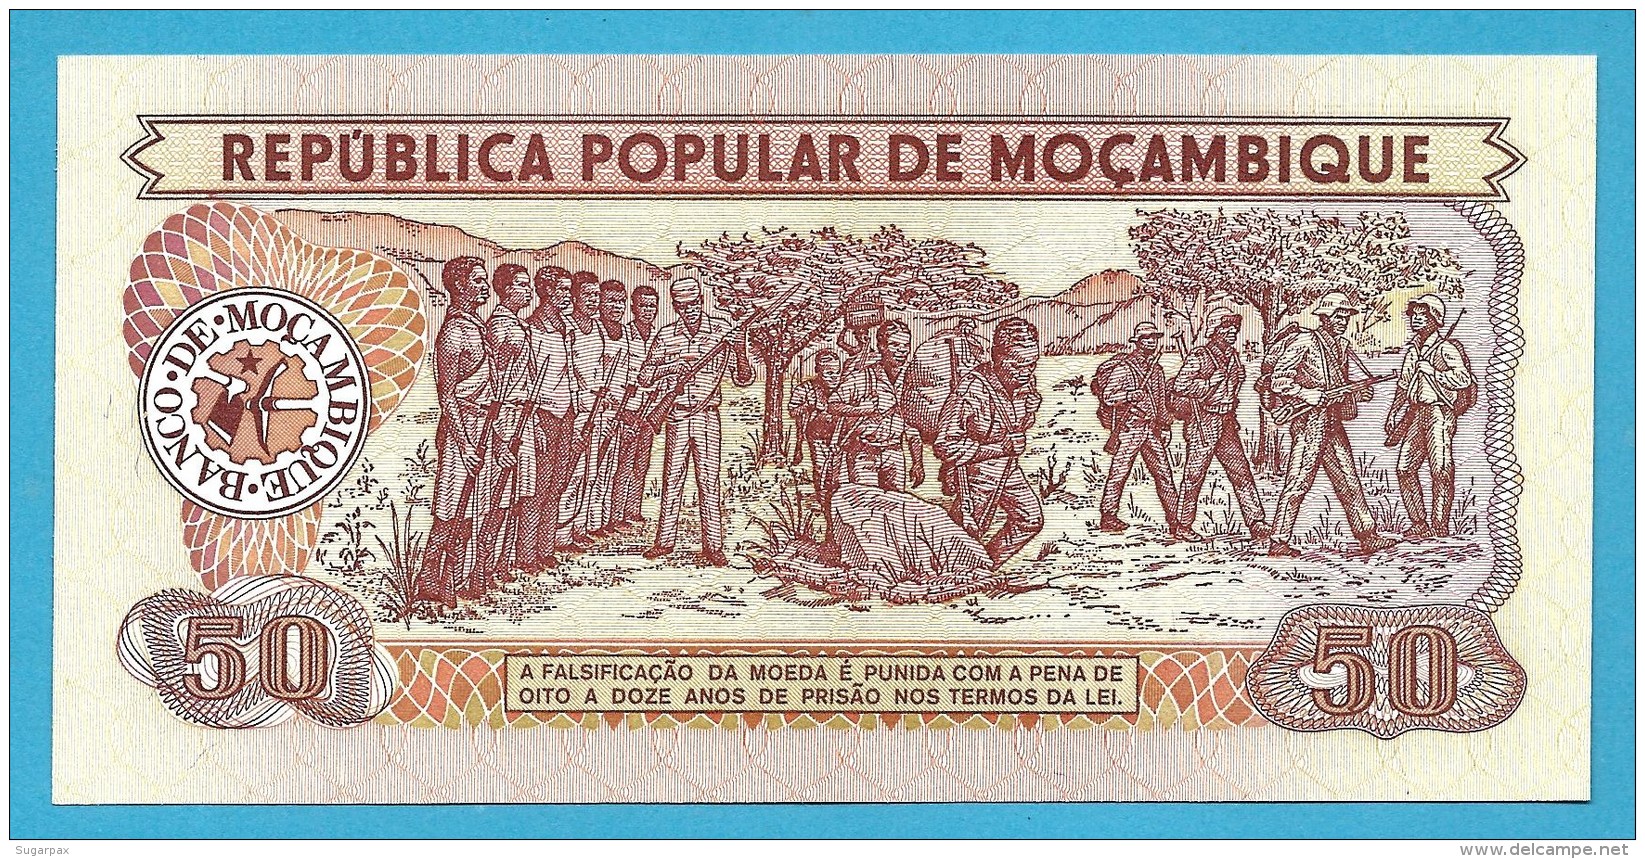 MOZAMBIQUE - 50 METICAIS - 16.06.1986 - P 129.b - Unc. -  Série AK - Soldiers, Flag Ceremony / Soldiers In Training - Mozambique